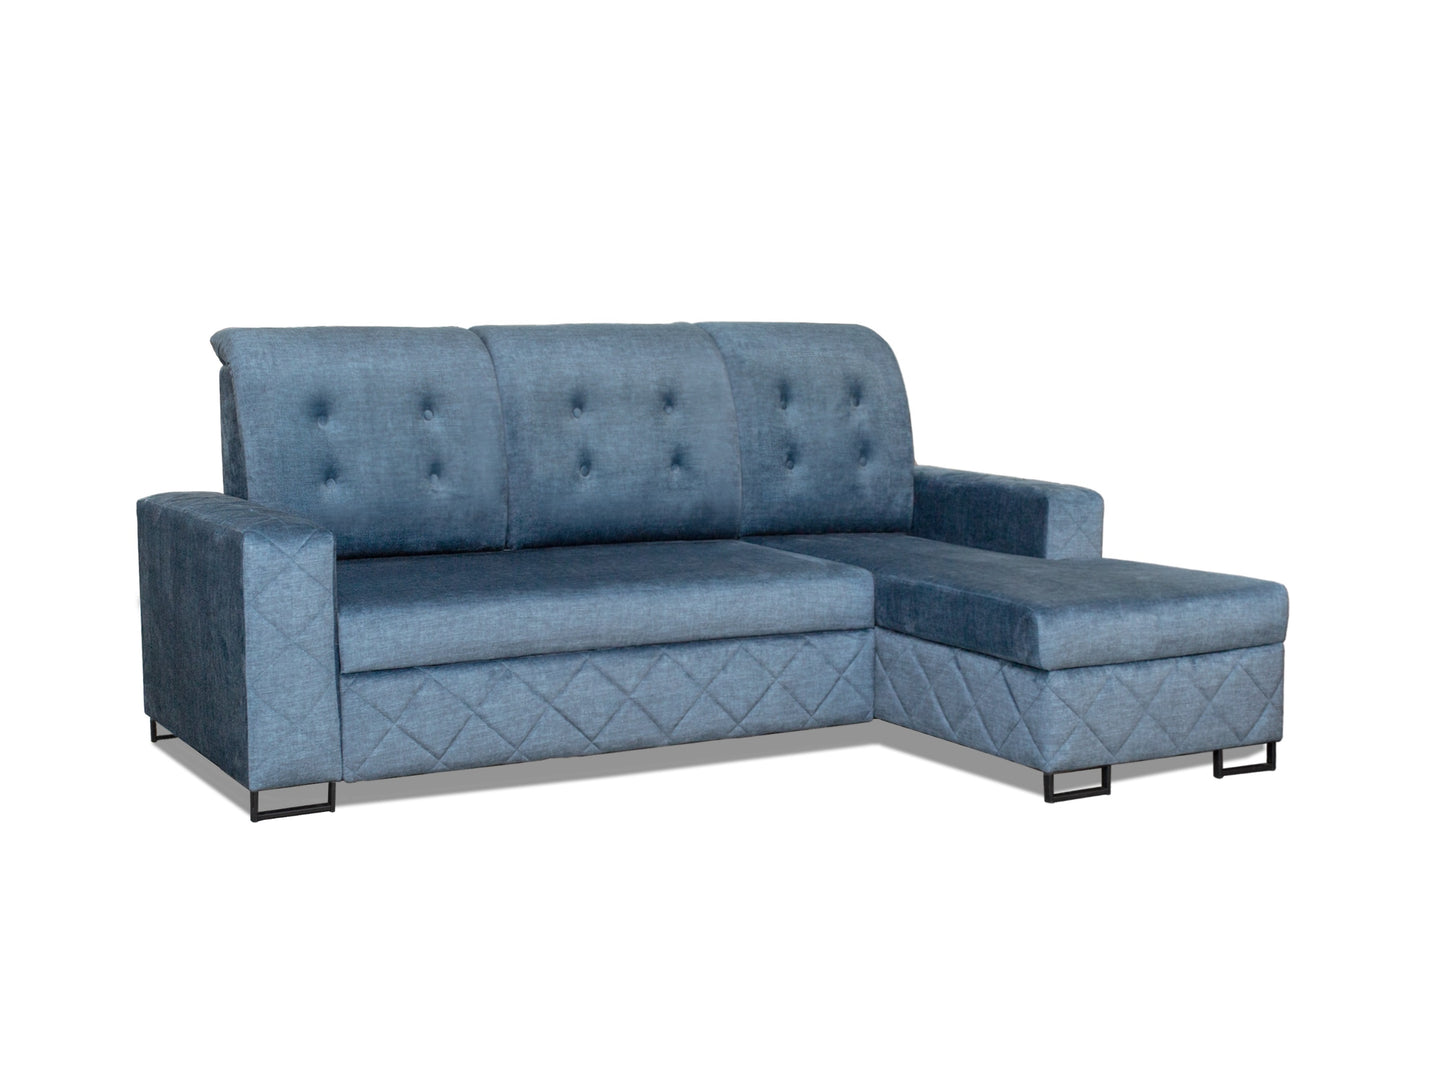 Niebieski narożnik do salonu funkcja spania FABIAN pikowany metalowe nogi w stylu loftowym to niezwykle elegancki mebel.